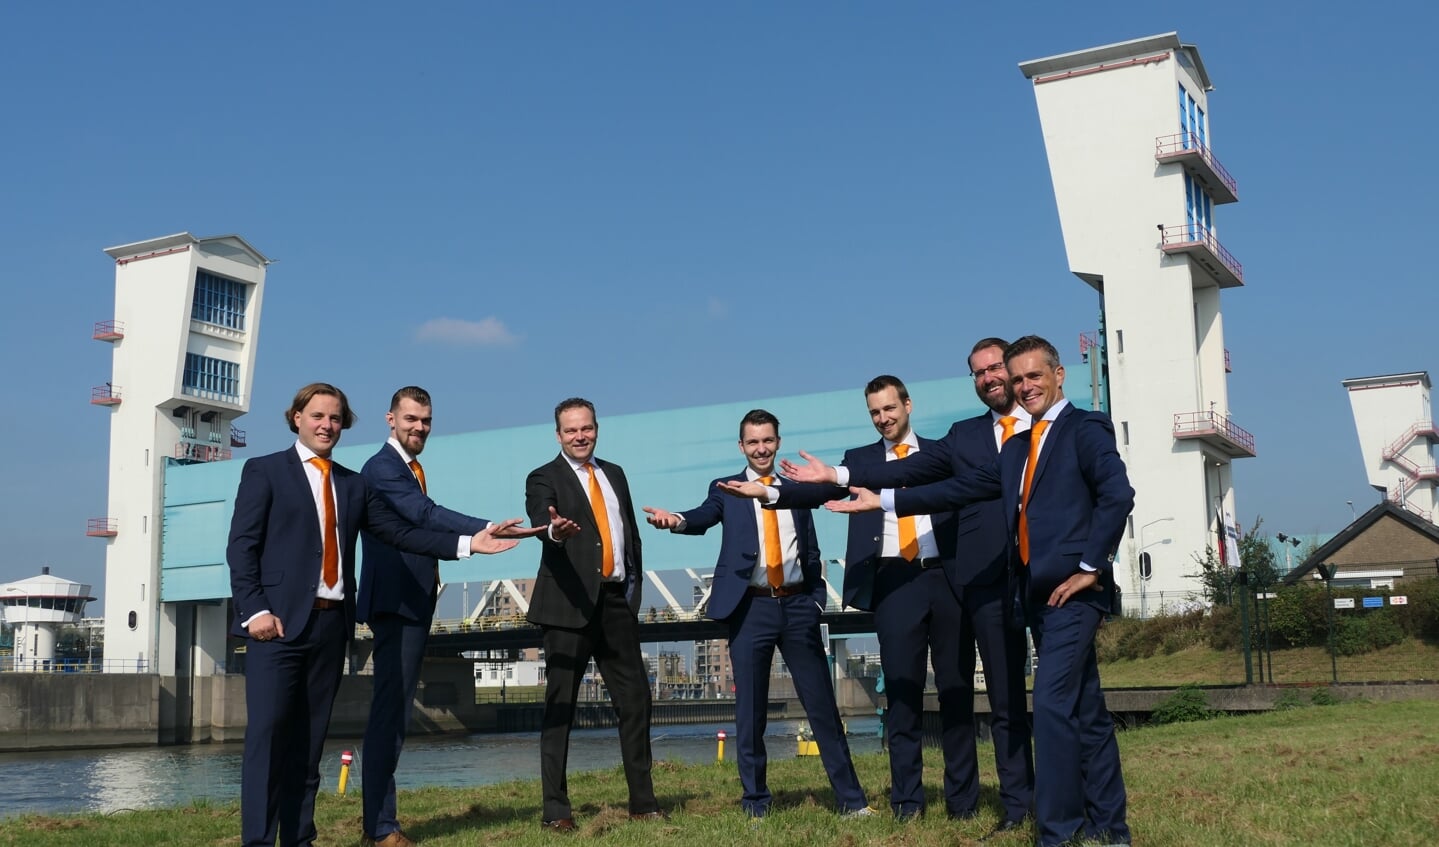 Van links naar rechts: Jaco Jacobs, Aron van Nieuwkoop, Ronald Hogendoorn, Anton Brand, Adriaan van Beek, Hugo van der Wal en Arrèn van Tienhoven.